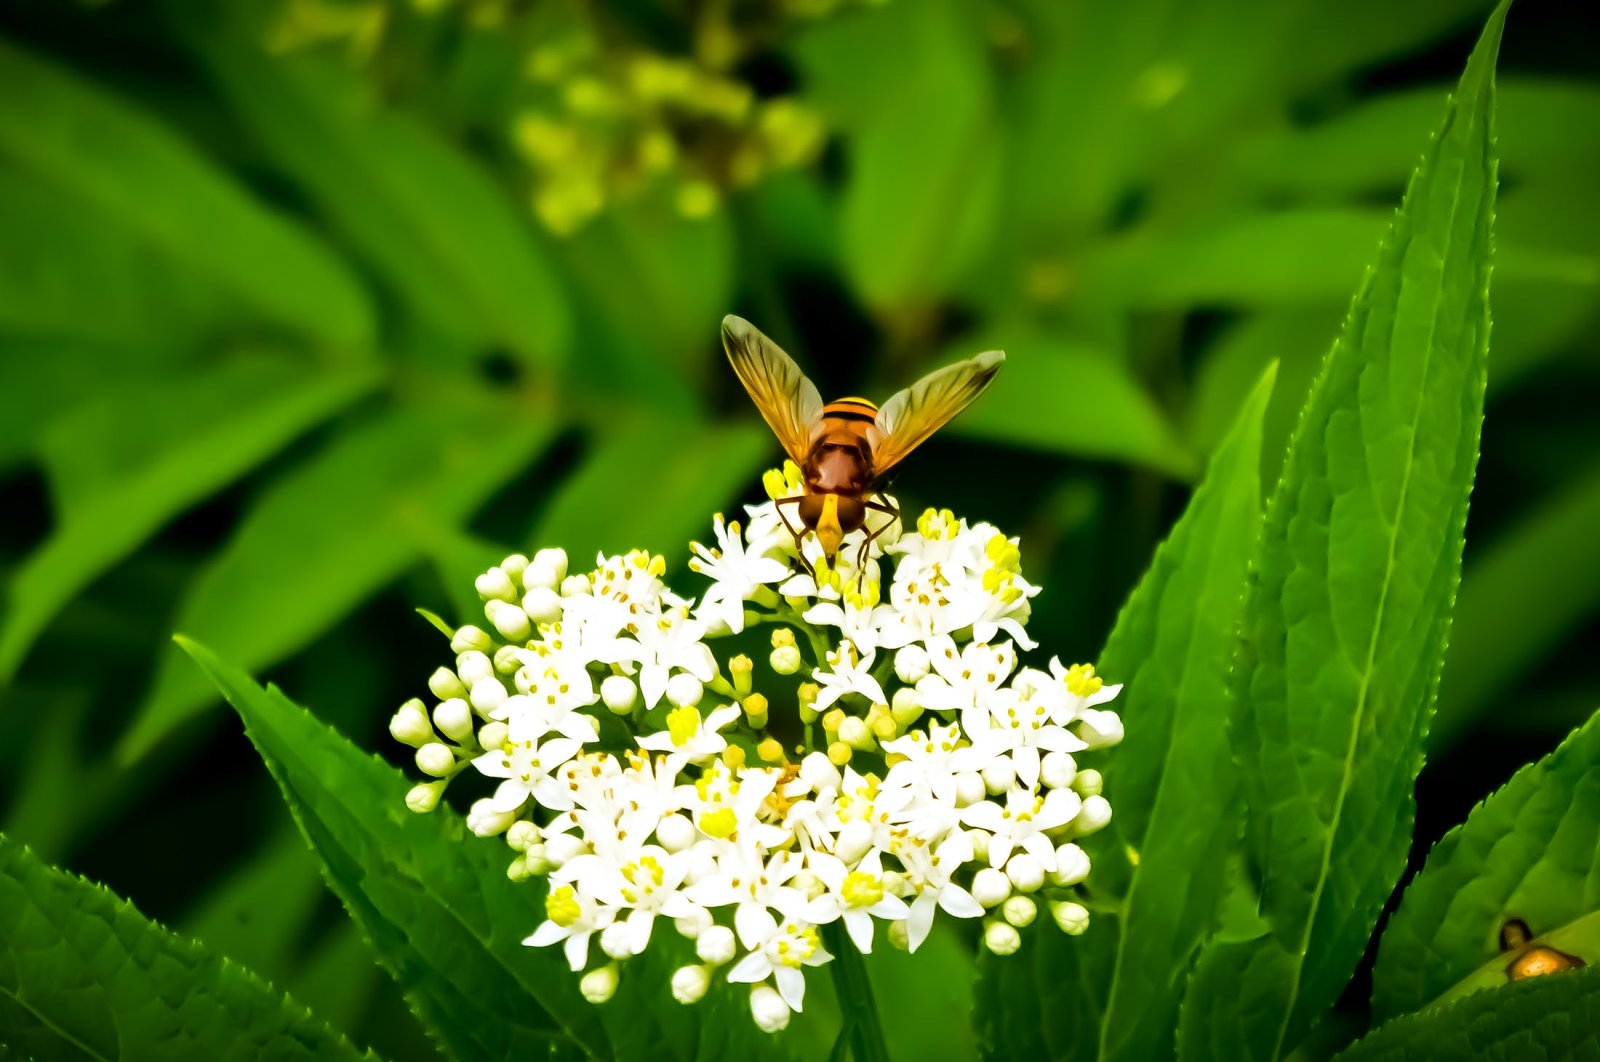 Kiat dan fakta menyenangkan tentang madu Turki untuk menghormati Hari Lebah Sedunia